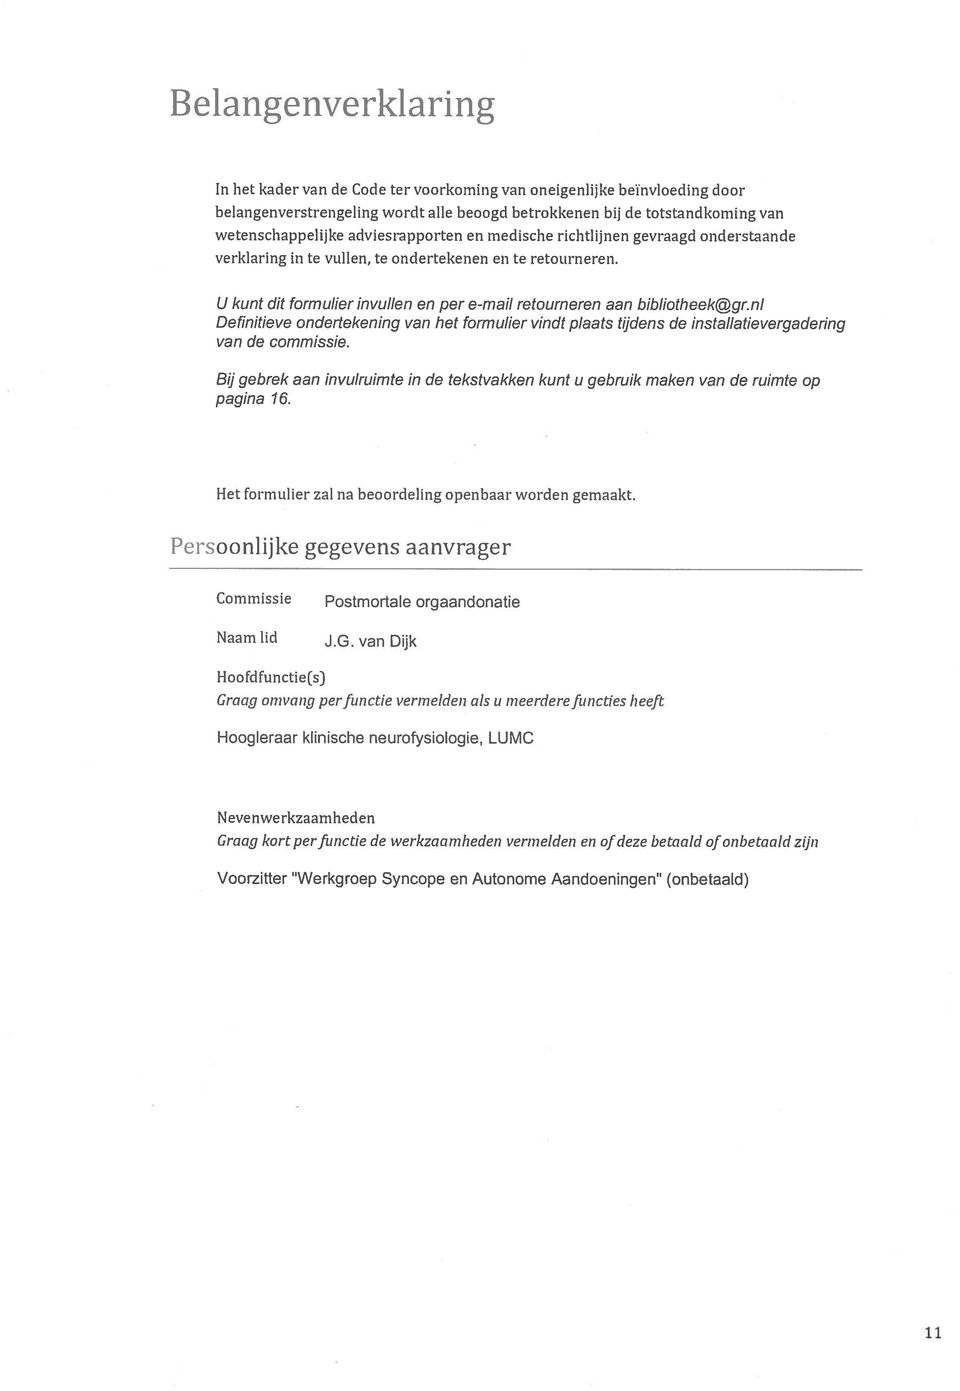 nl Definitieve ondertekening van het formulier vindt plaats tijdens de installatievergadering van de commissie.